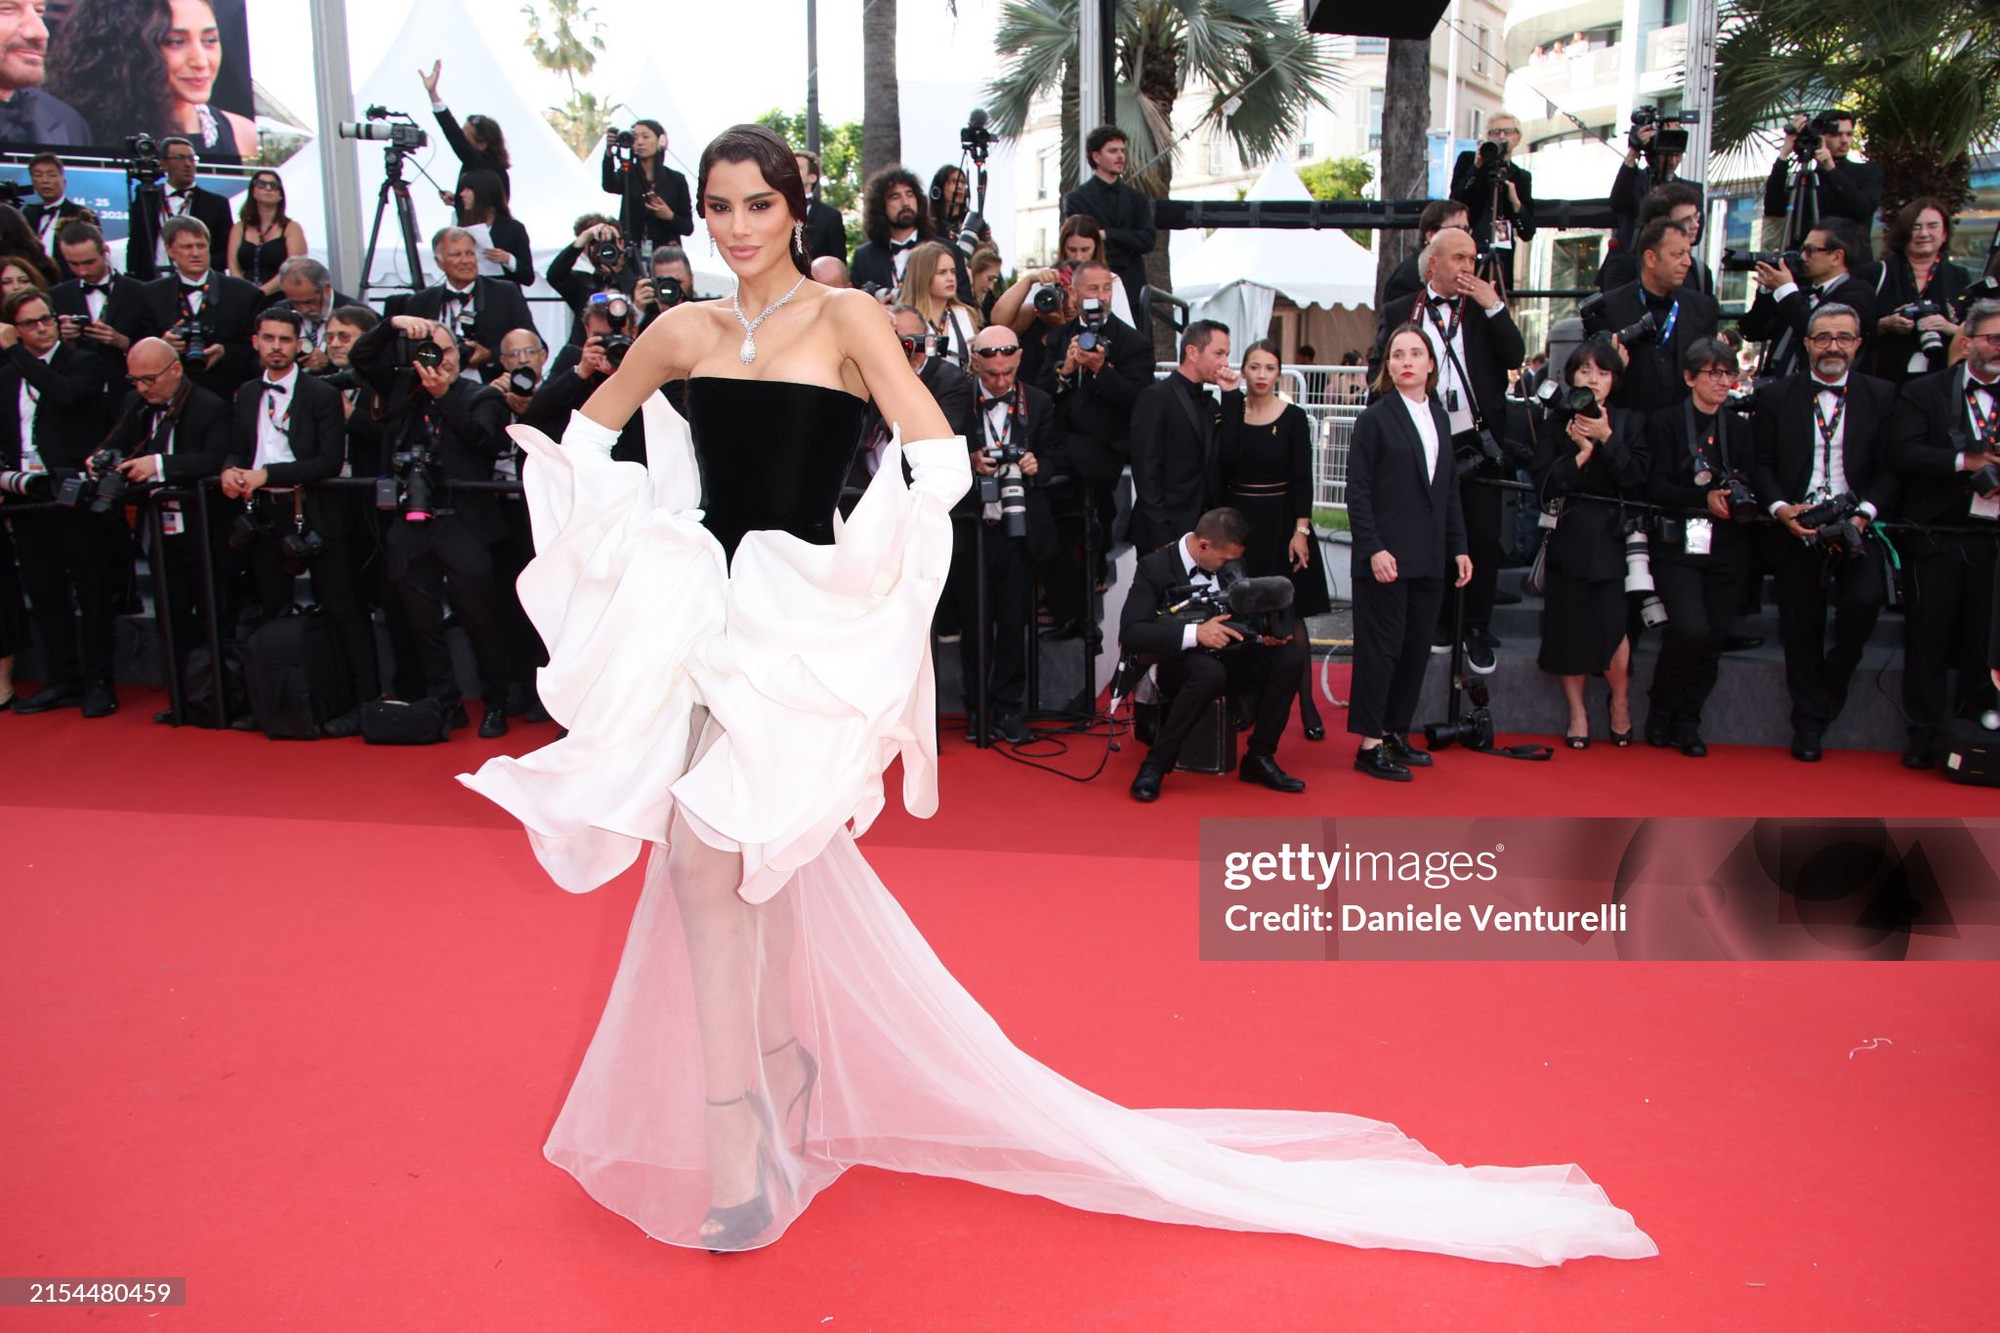 Thảm đỏ Cannes ngày 11: Bình An - Phương Nga lần đầu đổ bộ, siêu mẫu Coco Rocha - Á hậu Hoàn vũ cực slay - Ảnh 8.